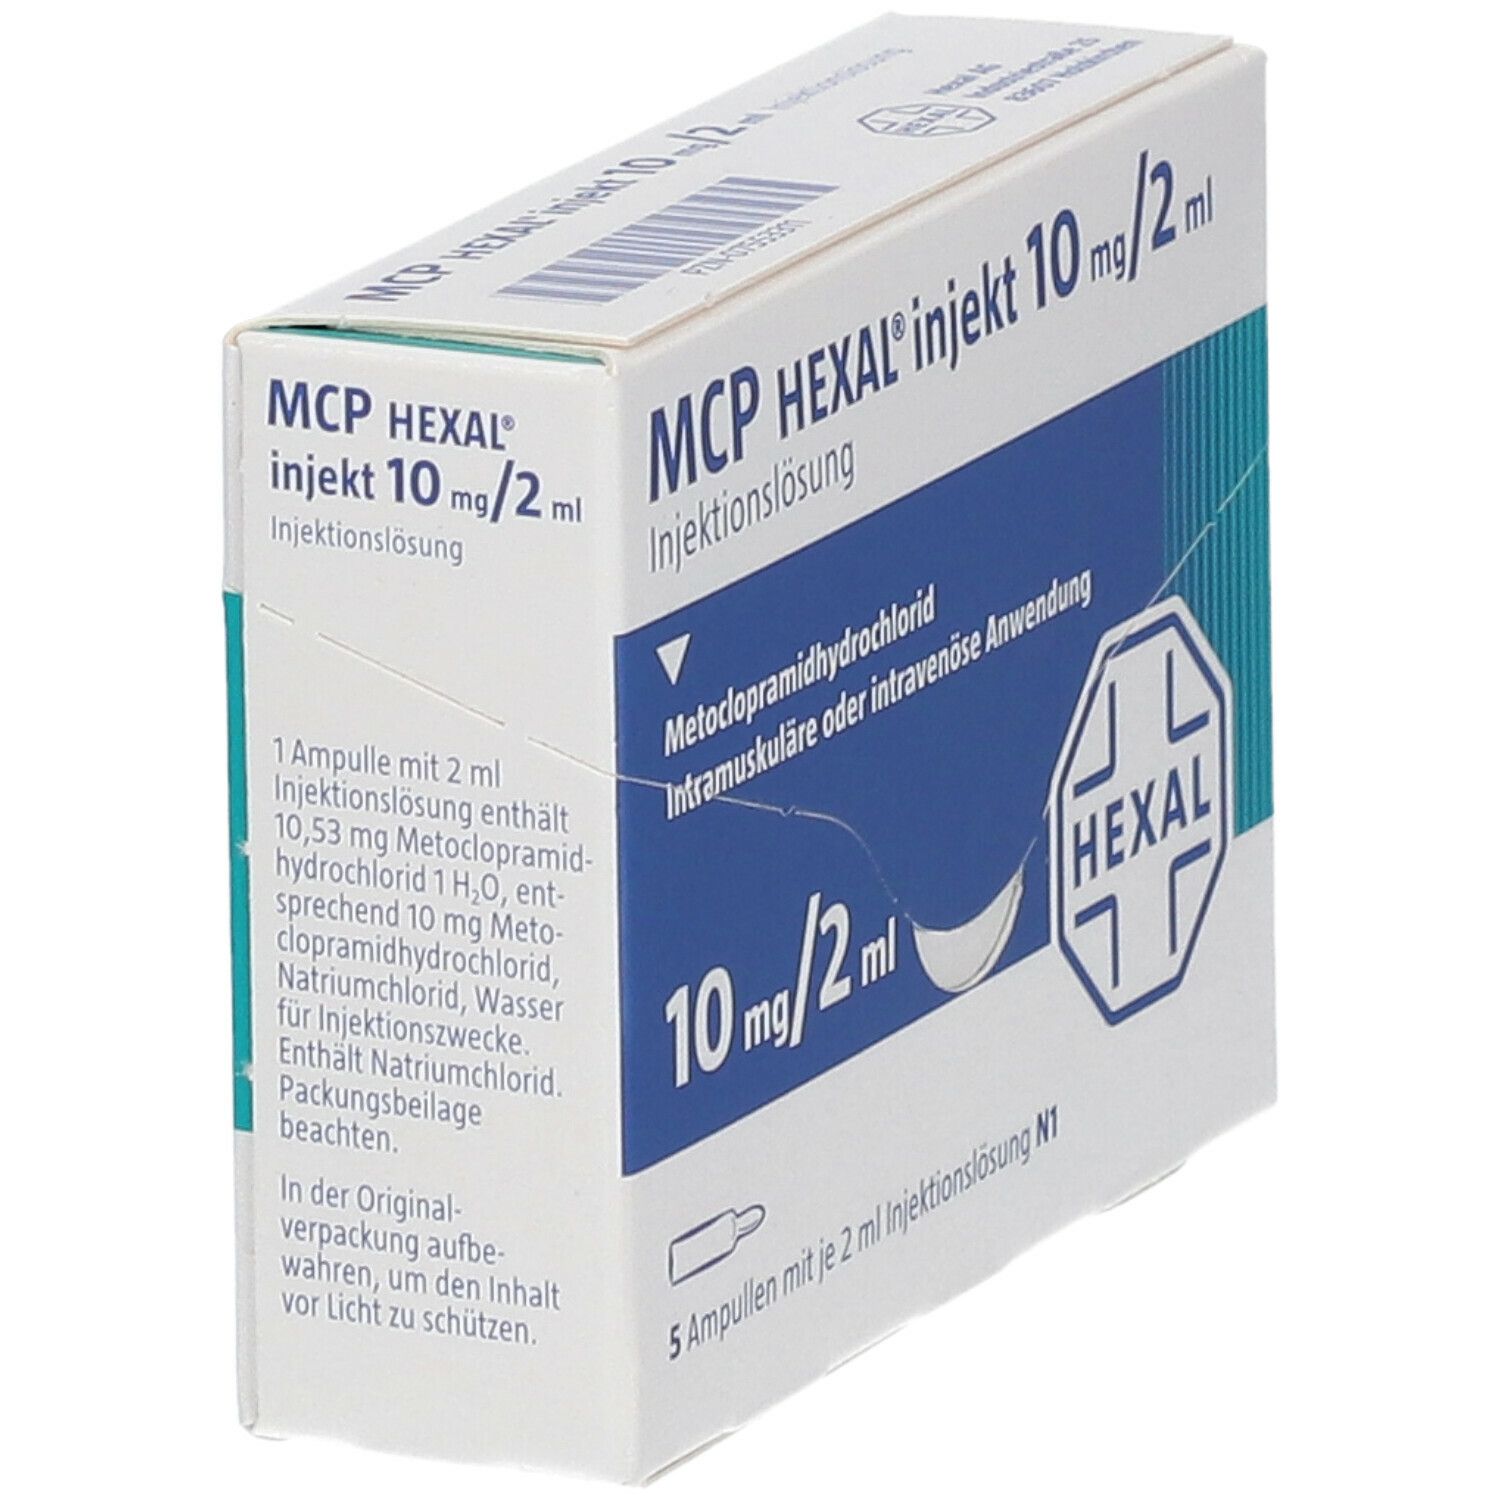 MCP HEXAL® injekt 10 mg/2 ml